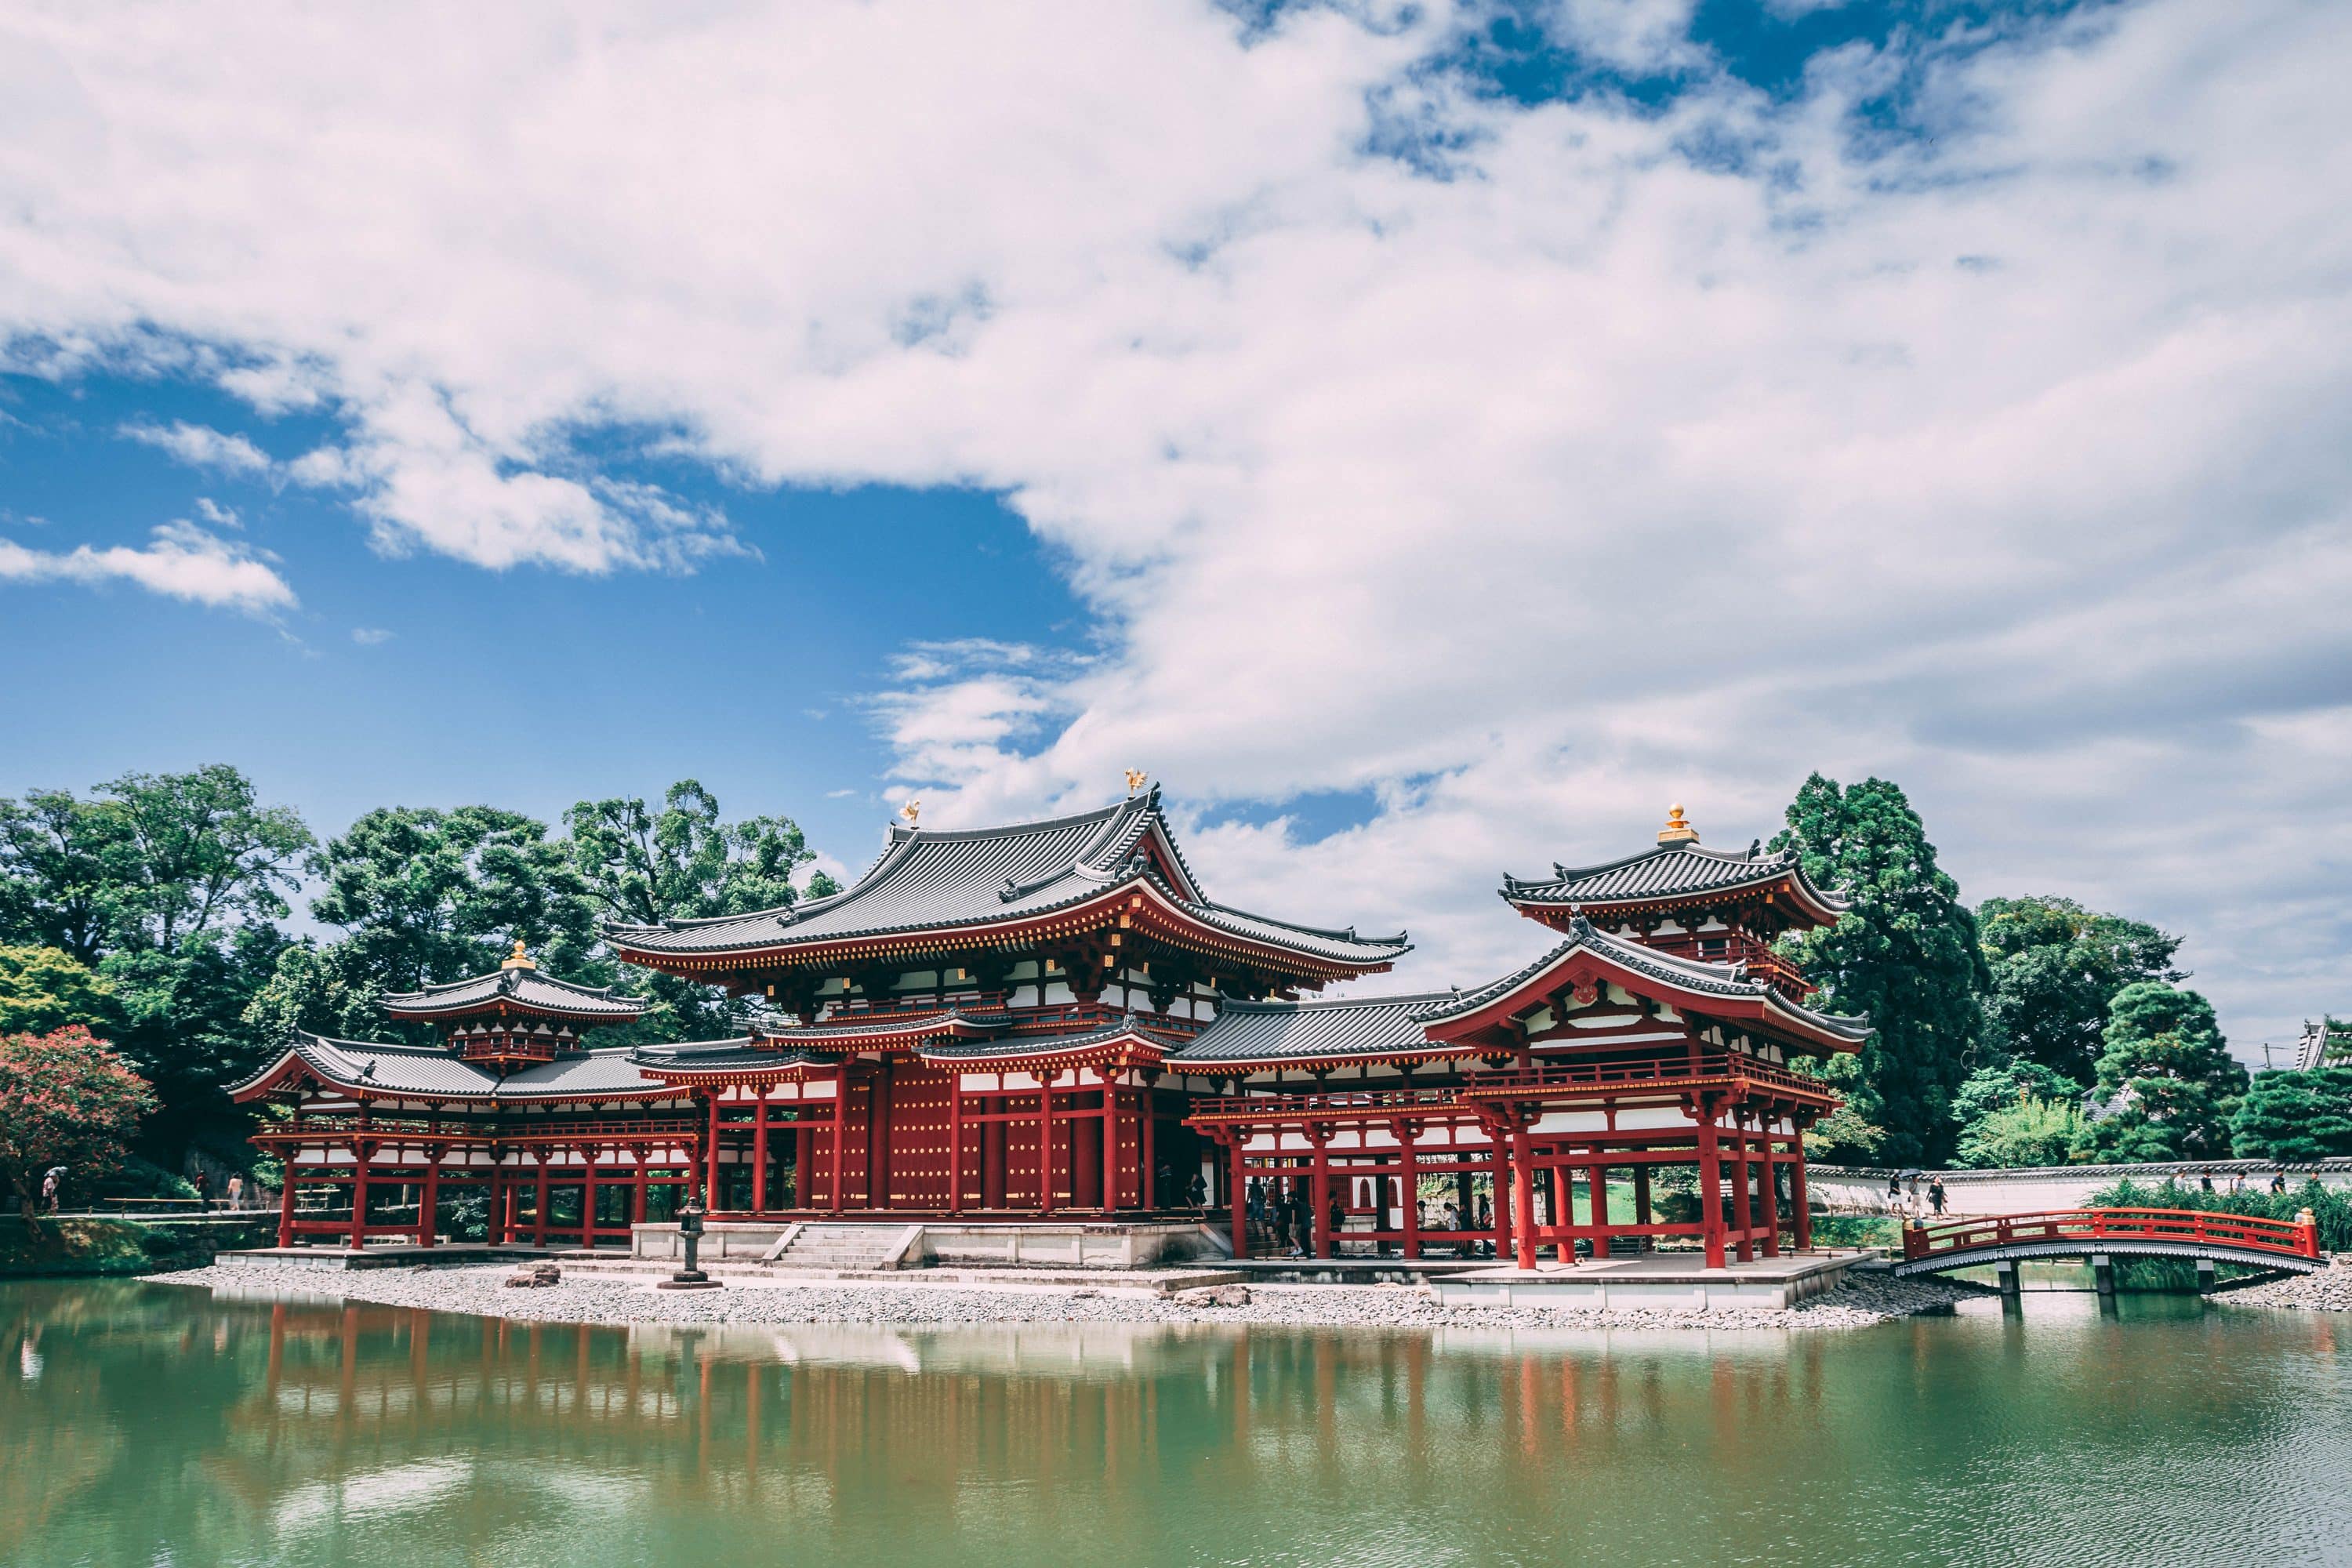 Red Japanese shrine